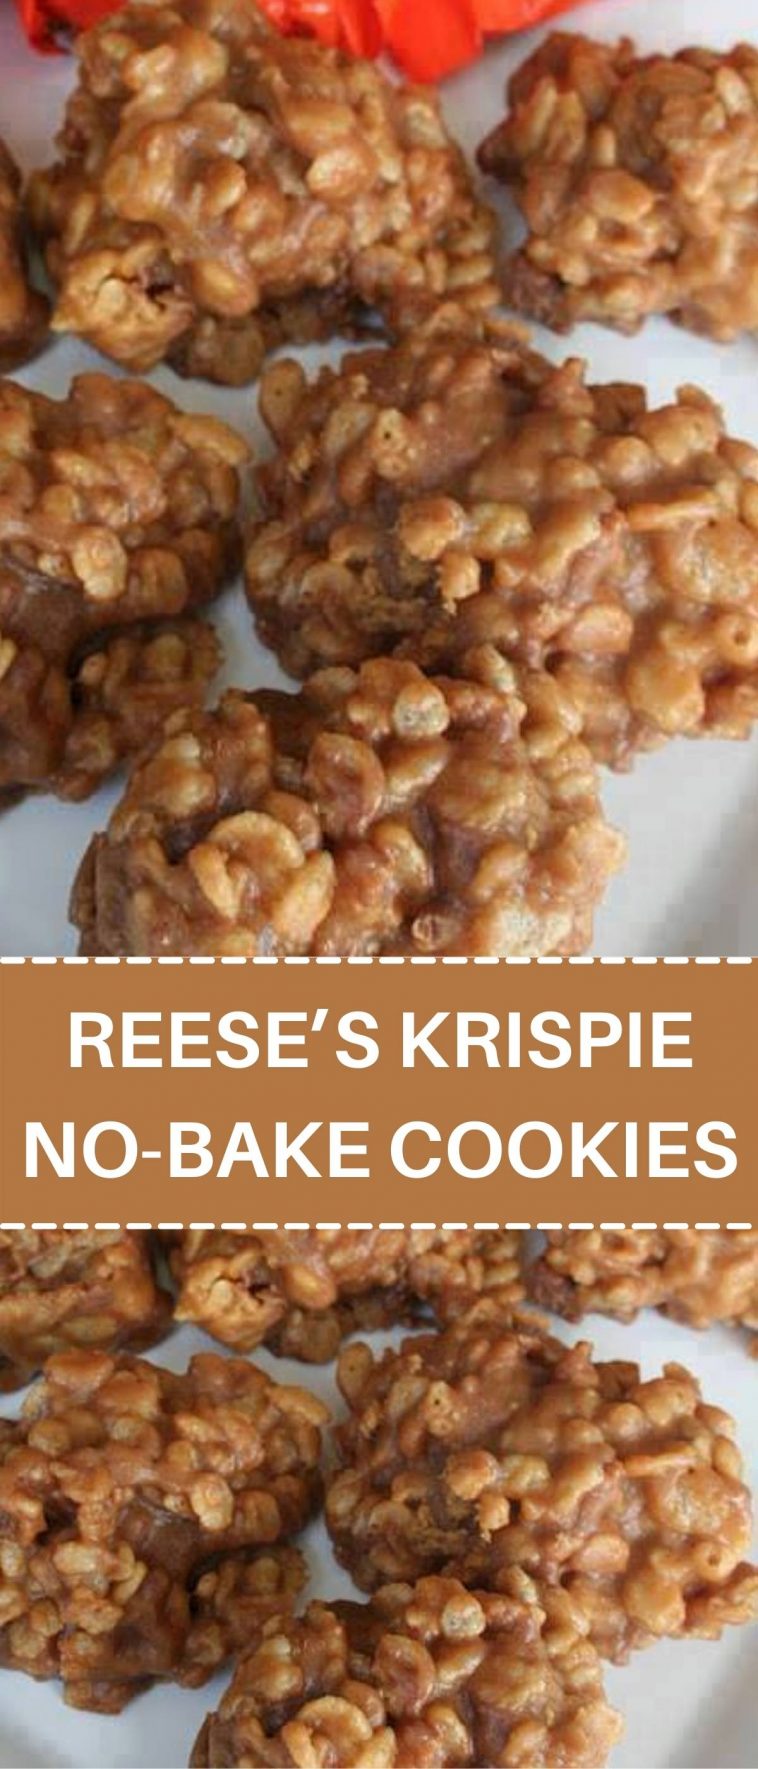 REESE’S KRISPIE NO-BAKE COOKIES